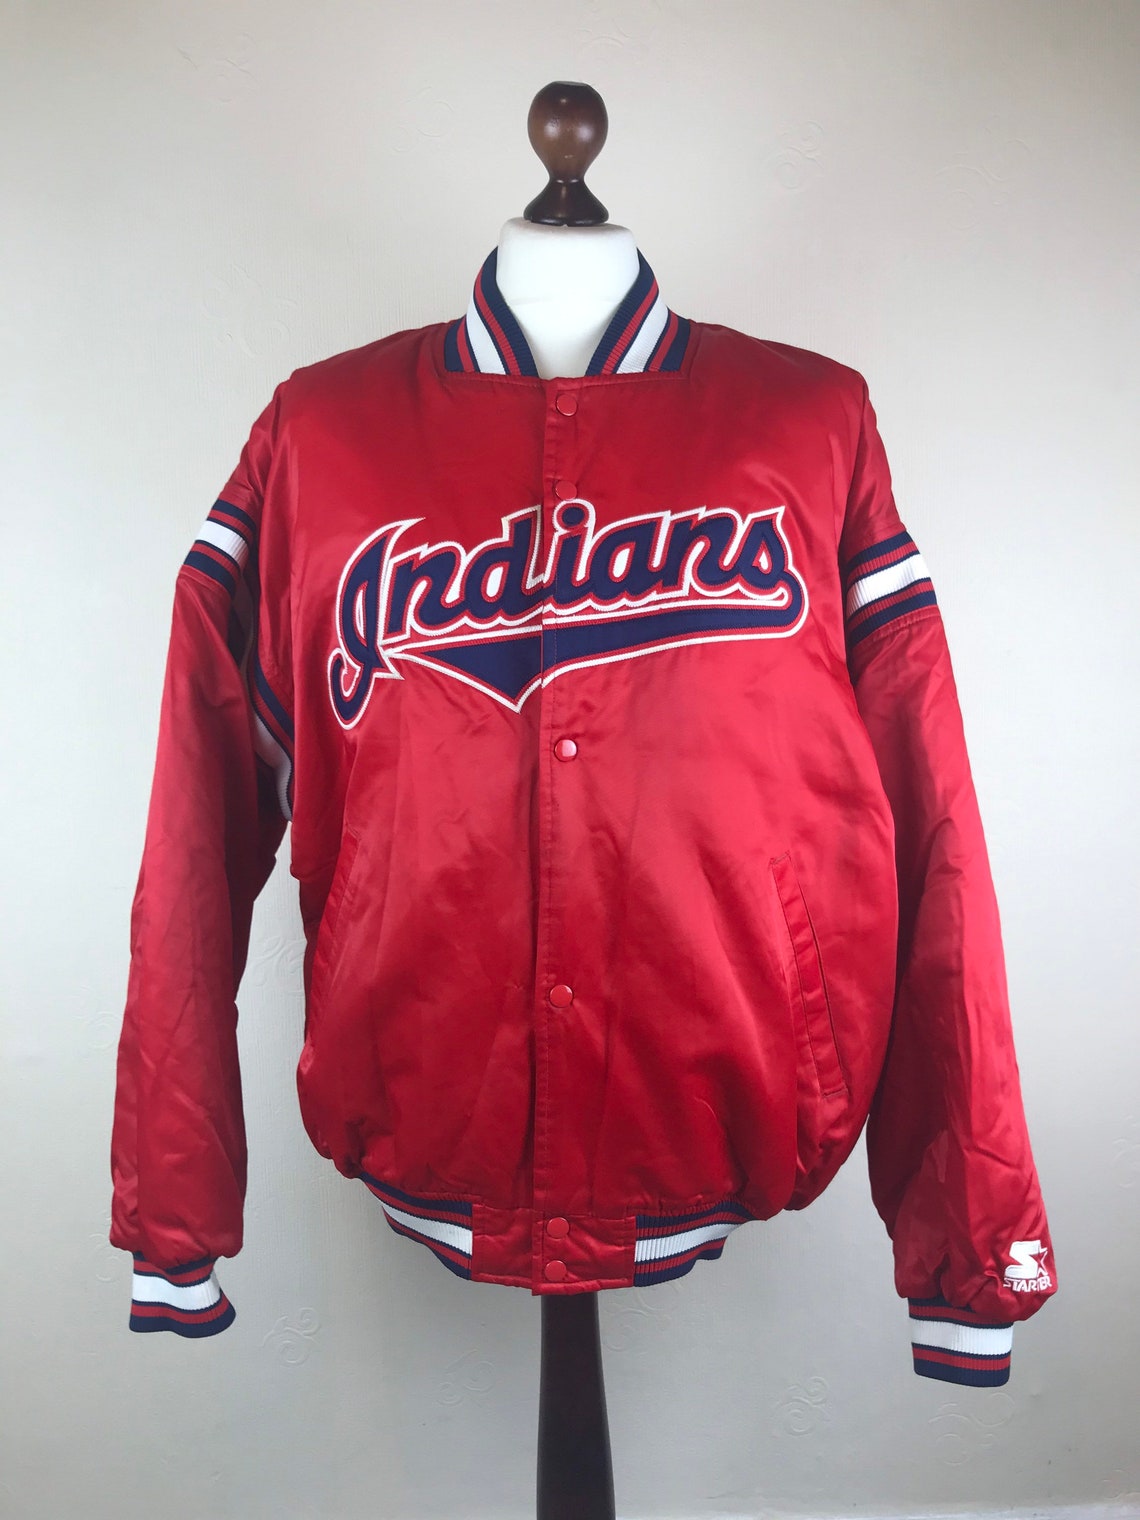 Vintage Starter Cleveland Indians Jacket | Etsy